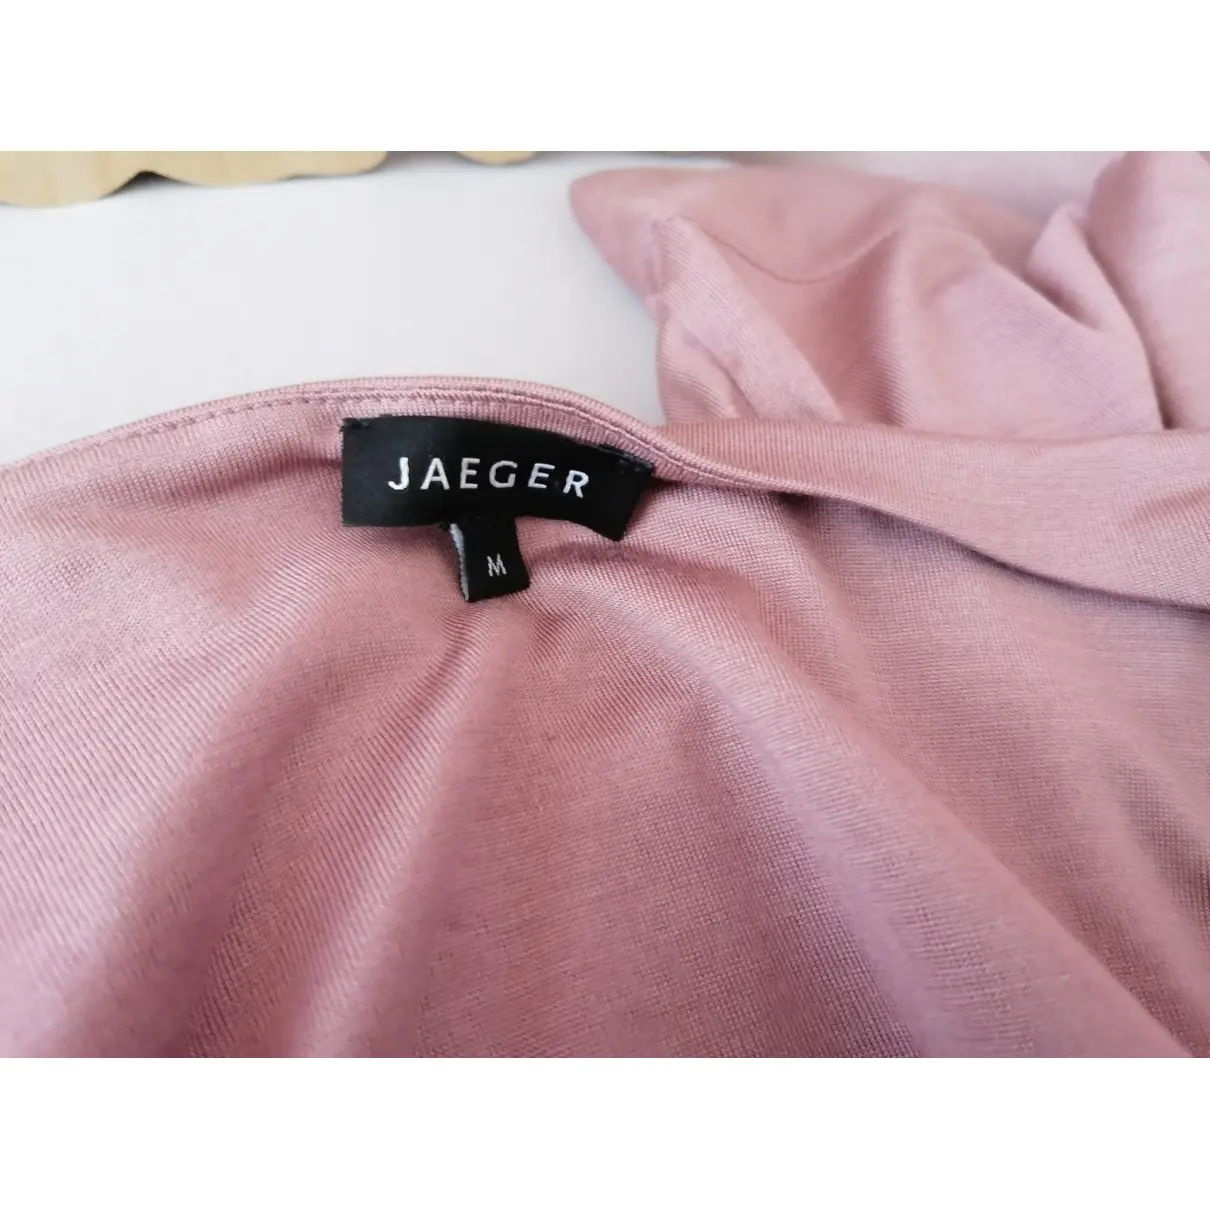 Buy Jaeger Silk top online